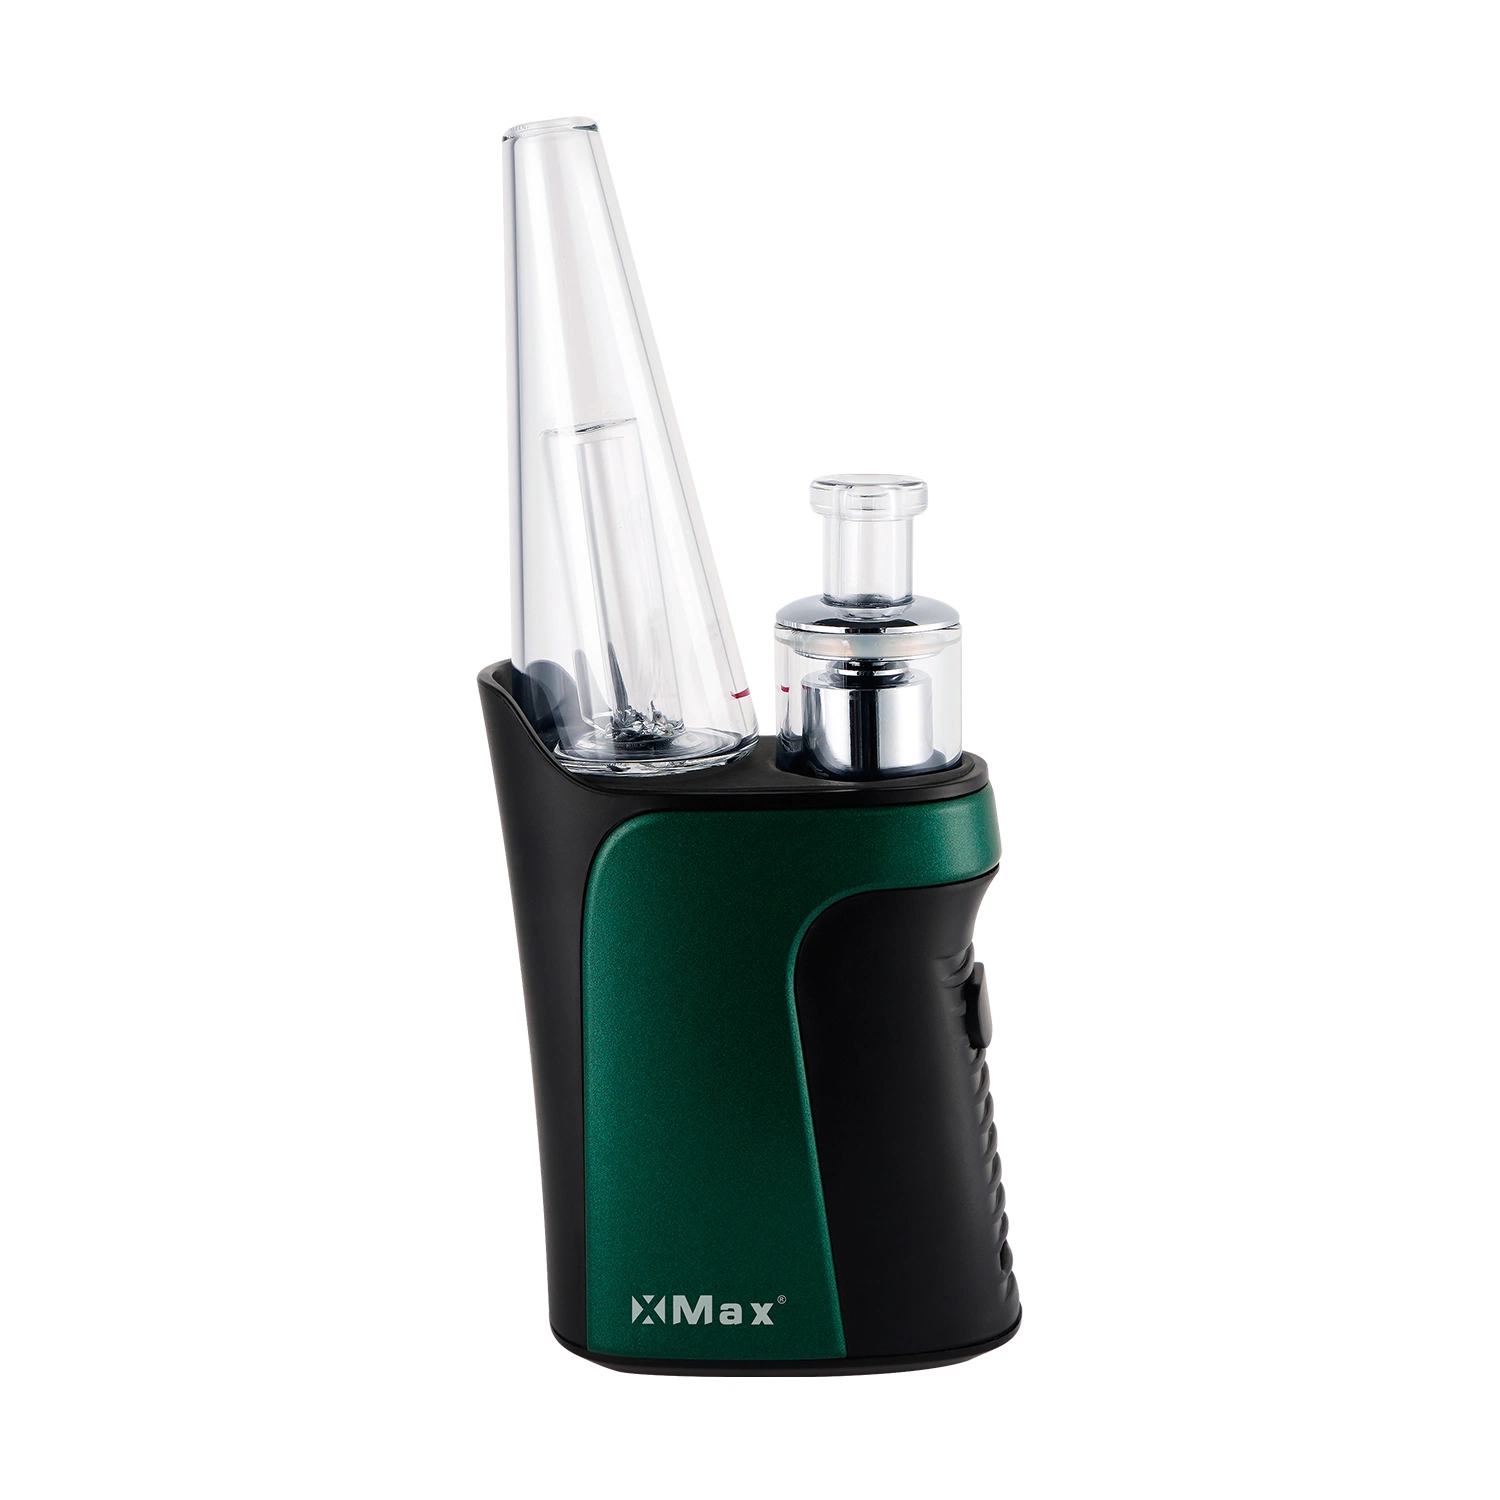 Hot Sale Xmax Qomo Quartz Atomizer 1350 mAh Smoking Wax Vaporizer Pen Disposable Pod and Puff Electronic Cigarette Vape Pen Vaporizer